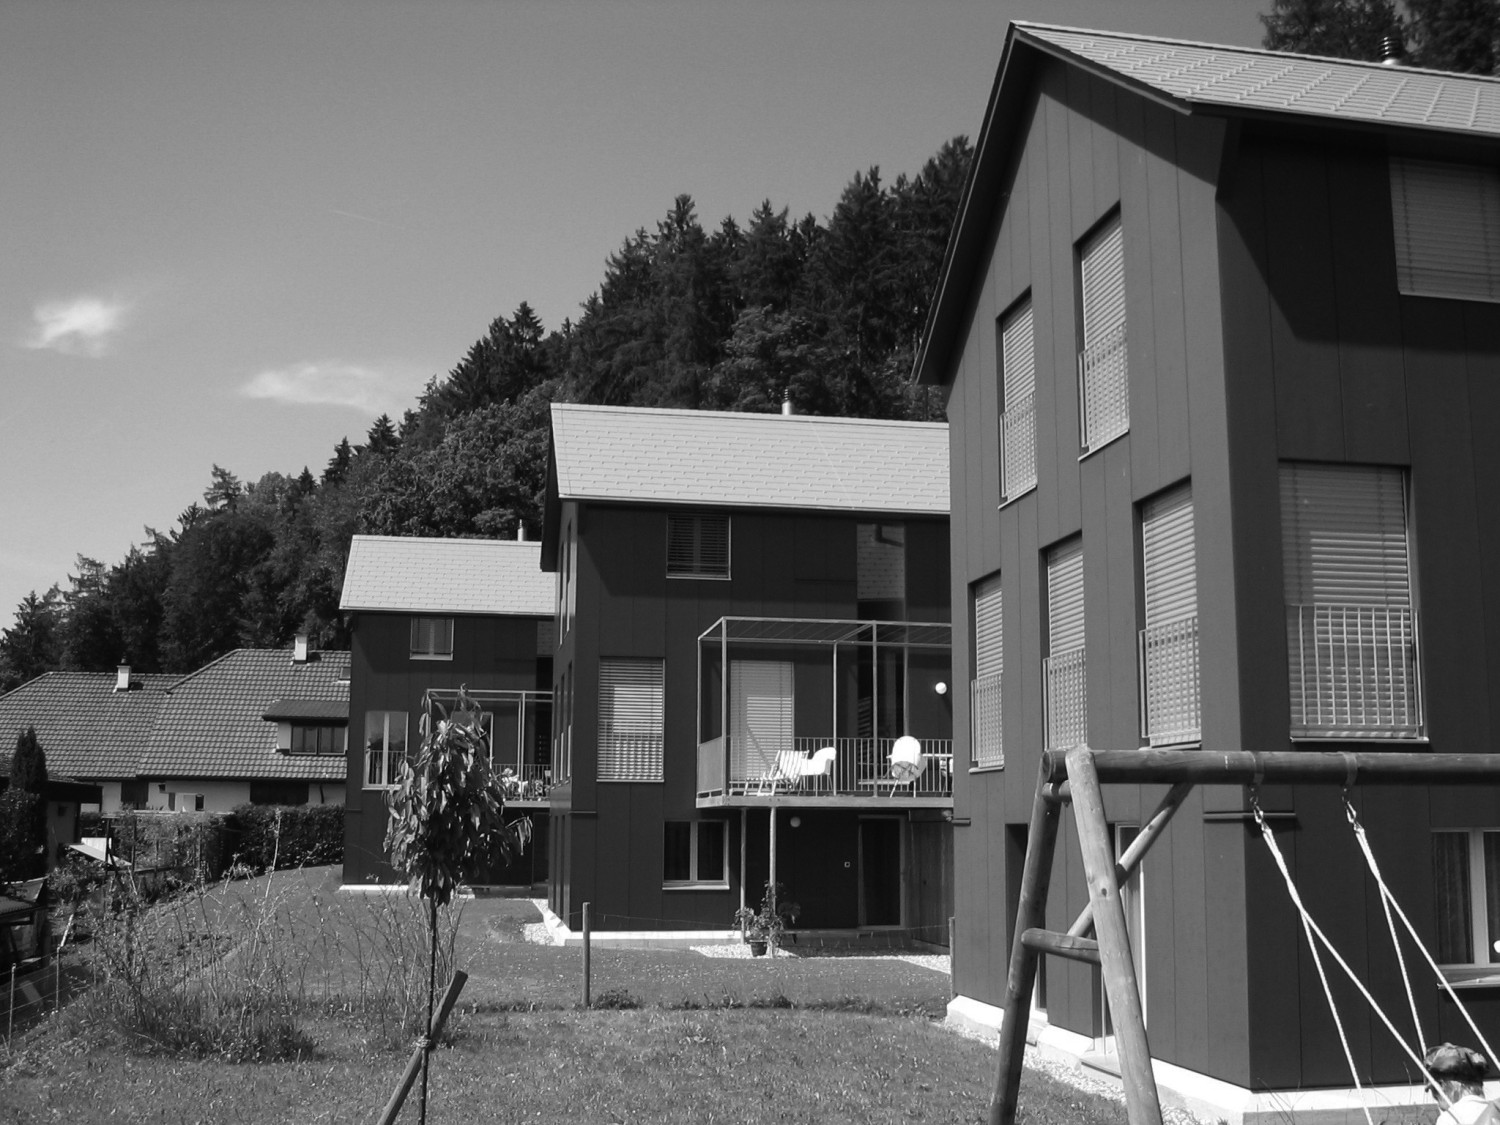 HUMMBURKART ARCHITEKTEN: Häuser obere Halde in Wikon